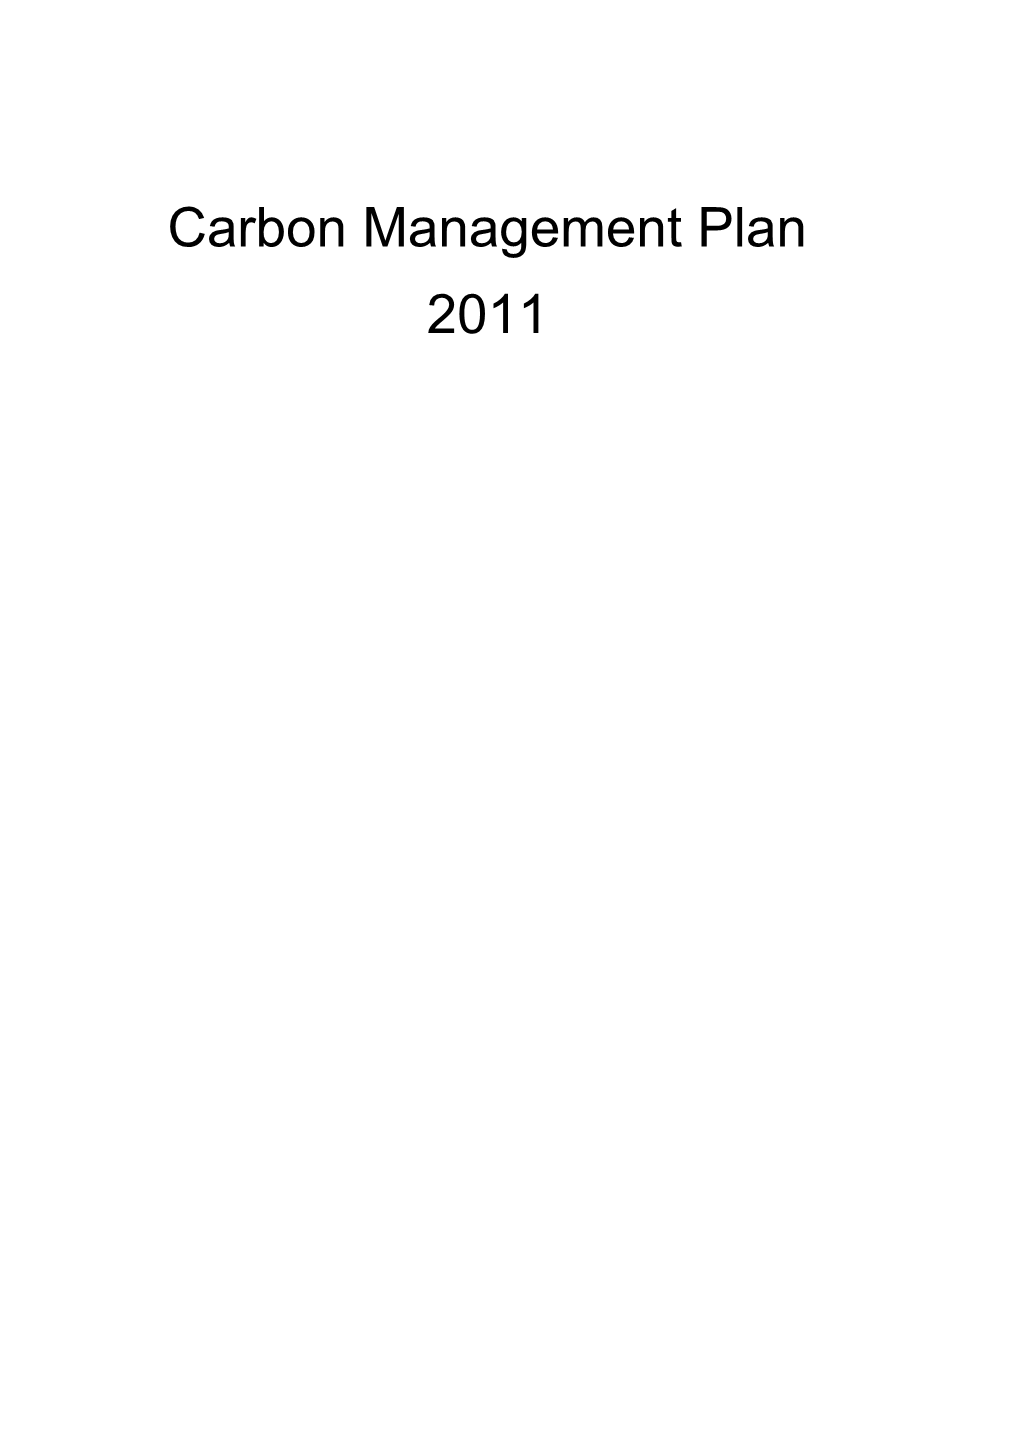 Carbon Management Plan s1